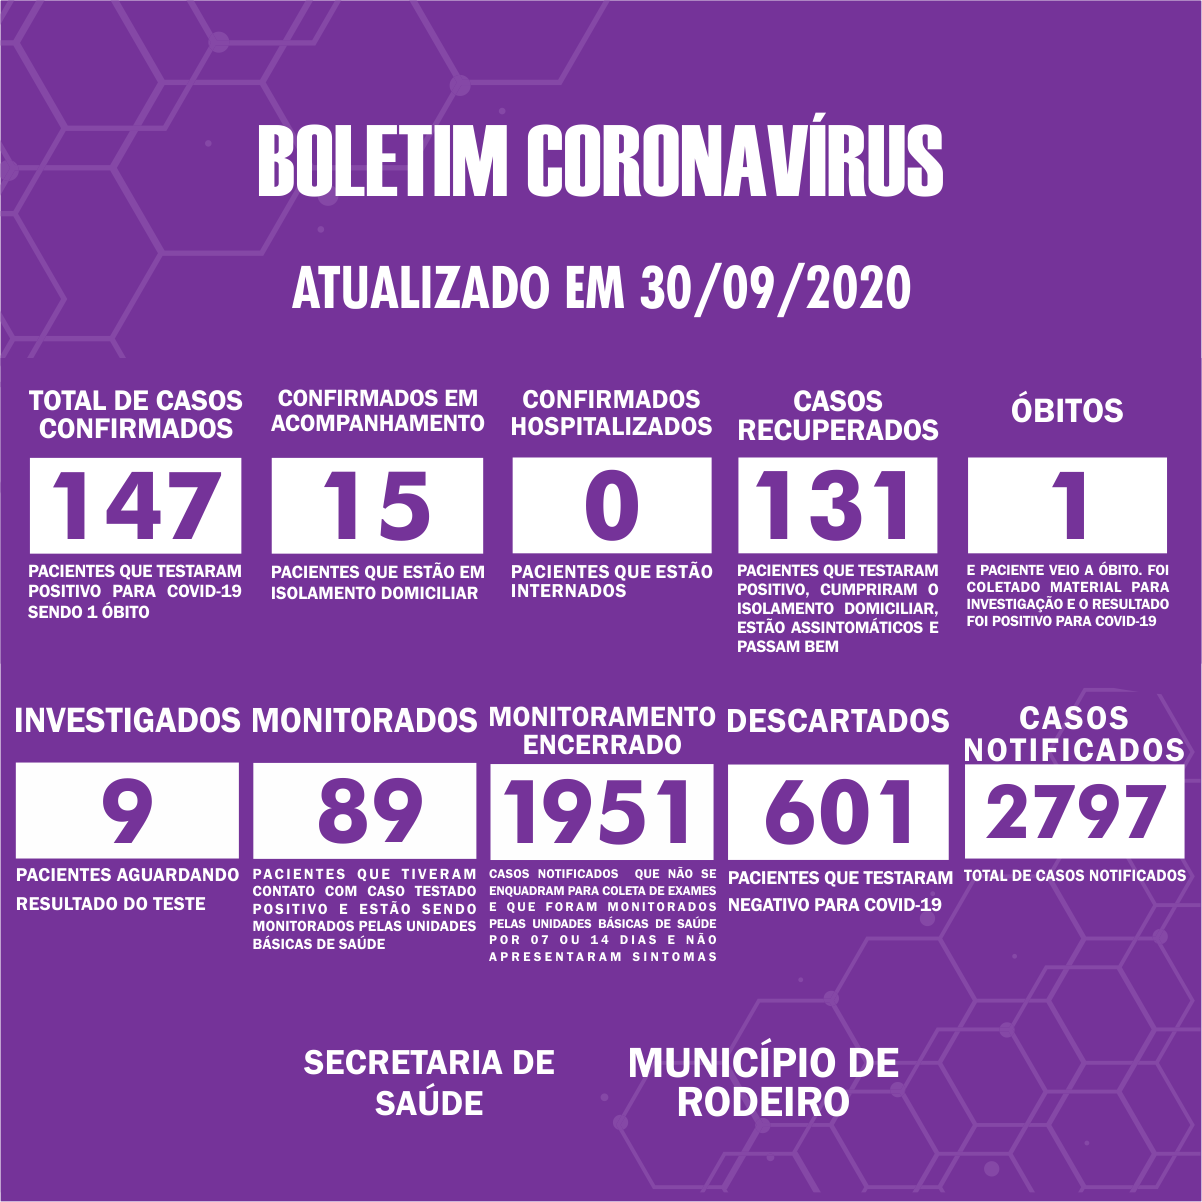 Boletim Epidemiológico do Município de Rodeiro sobre coronavírus, atualizado em 30/09/2020